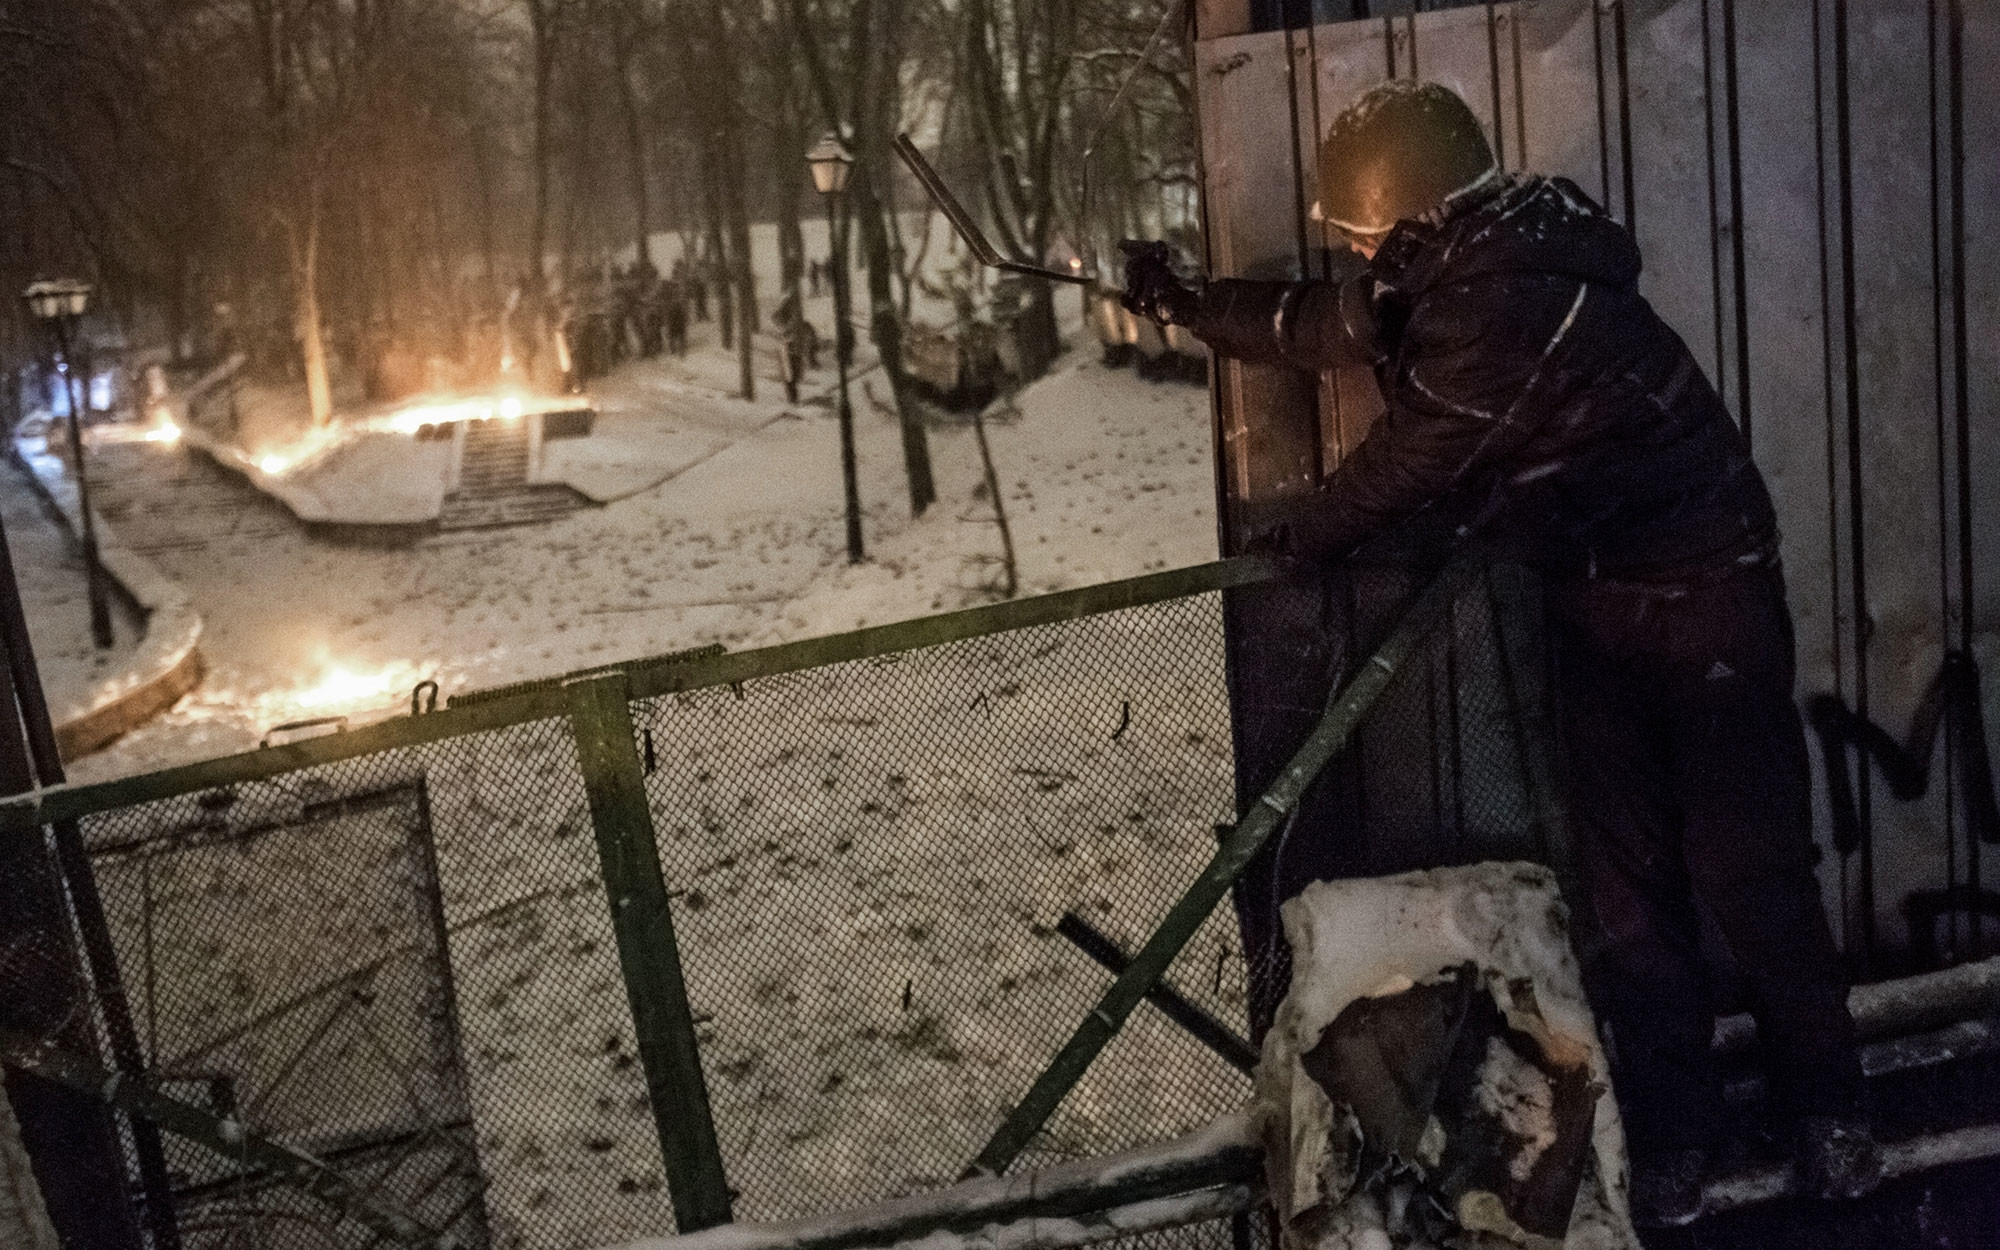 Участник акции протеста стреляет в полицейских из пневматического пистолета на улице Грушевского в Киеве. Фото: ©РИА Новости / Андрей Стенин